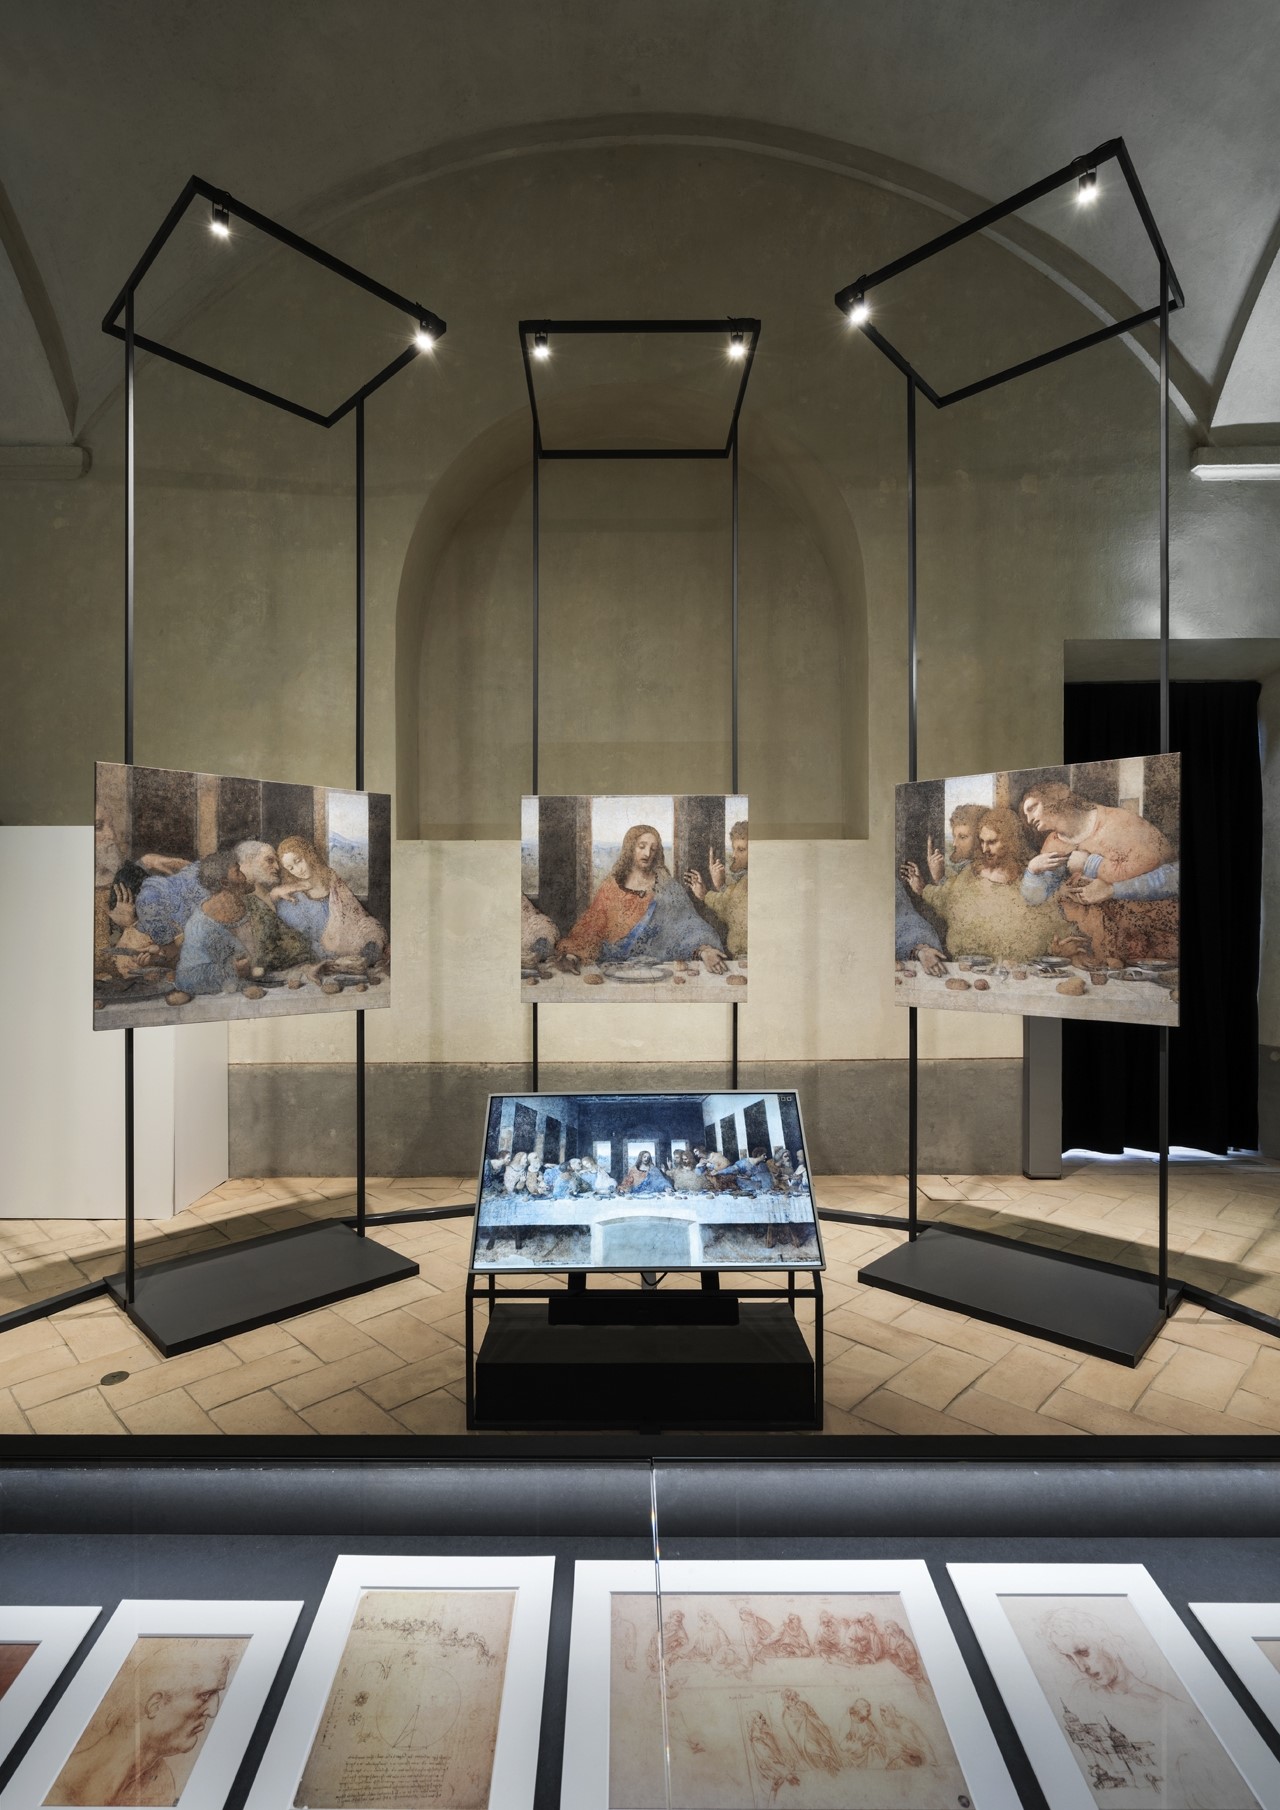 Paneles interactivos posibilitan que los visitantes vean la obra en zoom. (Foto: Andrea Martiradonna / BAMSphoto-Rodella / reproducción del sitio web del estudio Migliore y Servetto)